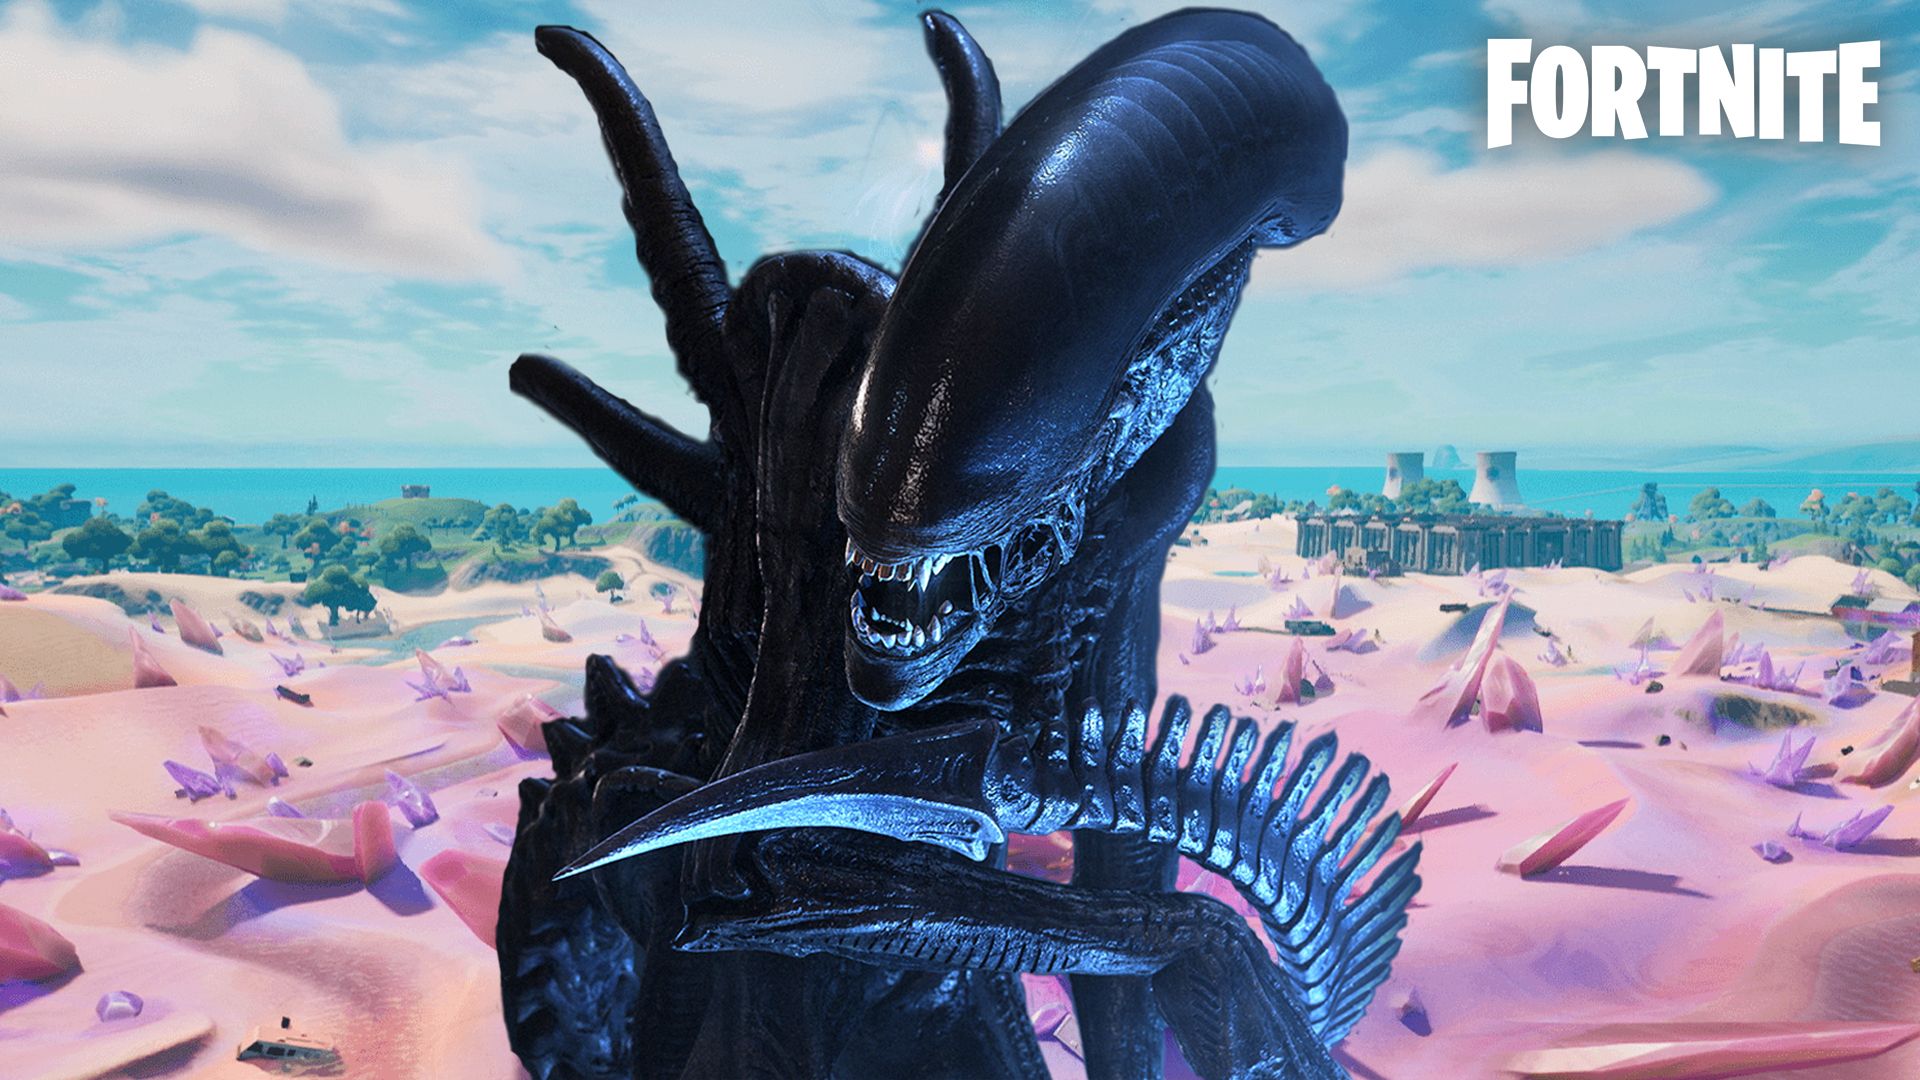 Fortnite Alien vs Predator crossover is really happening as new details lea...